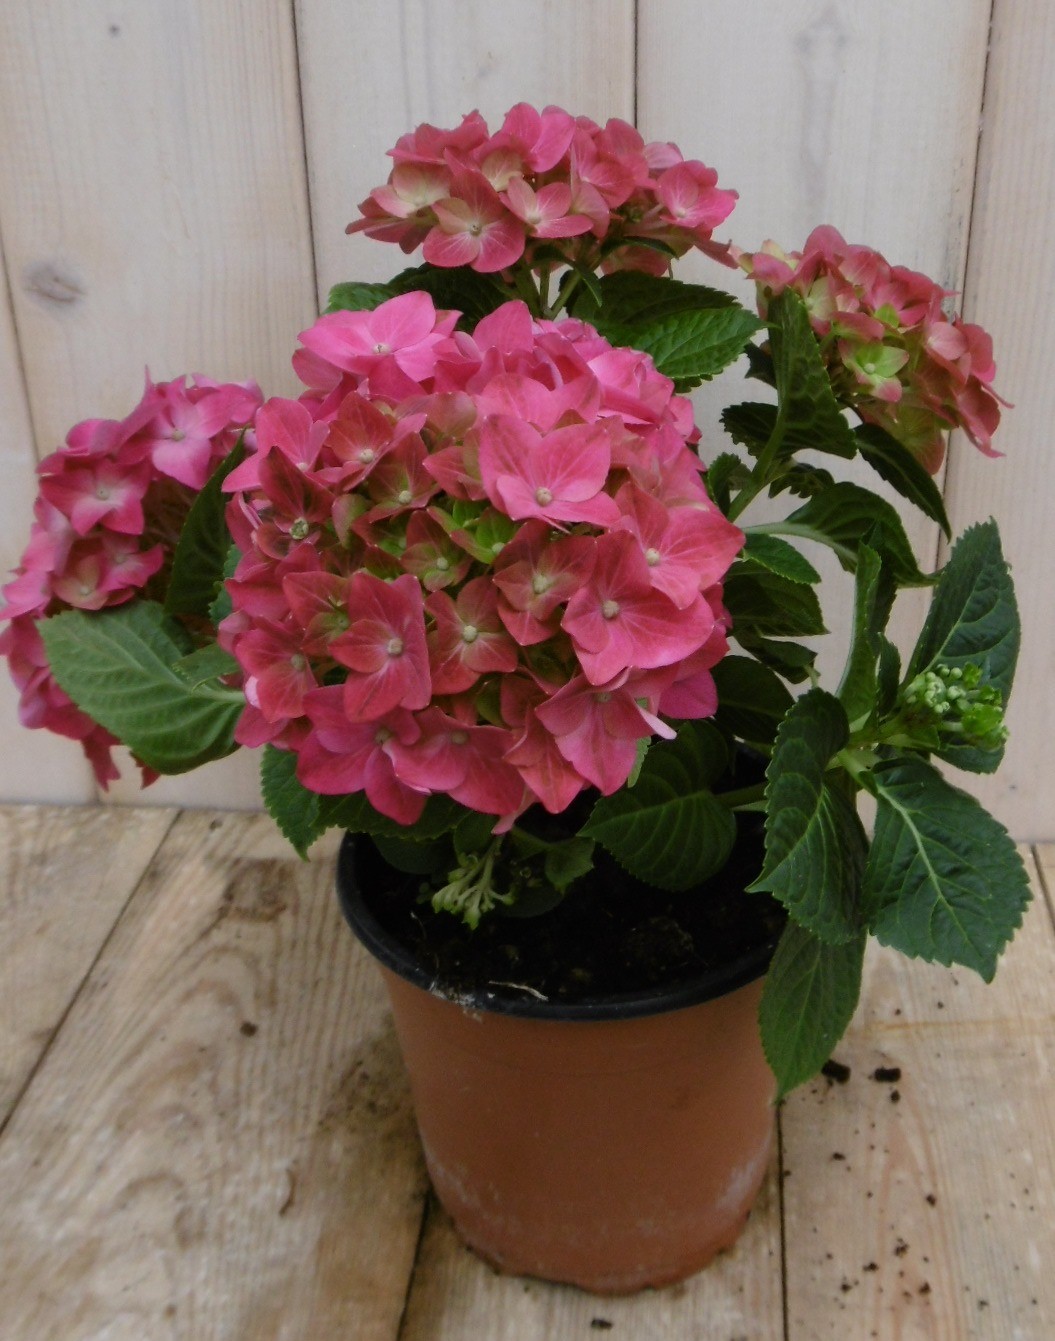 Hortensia Roze 30 - 40 cm 4 tot 6 bloemen - Warentuin Natuurlijk